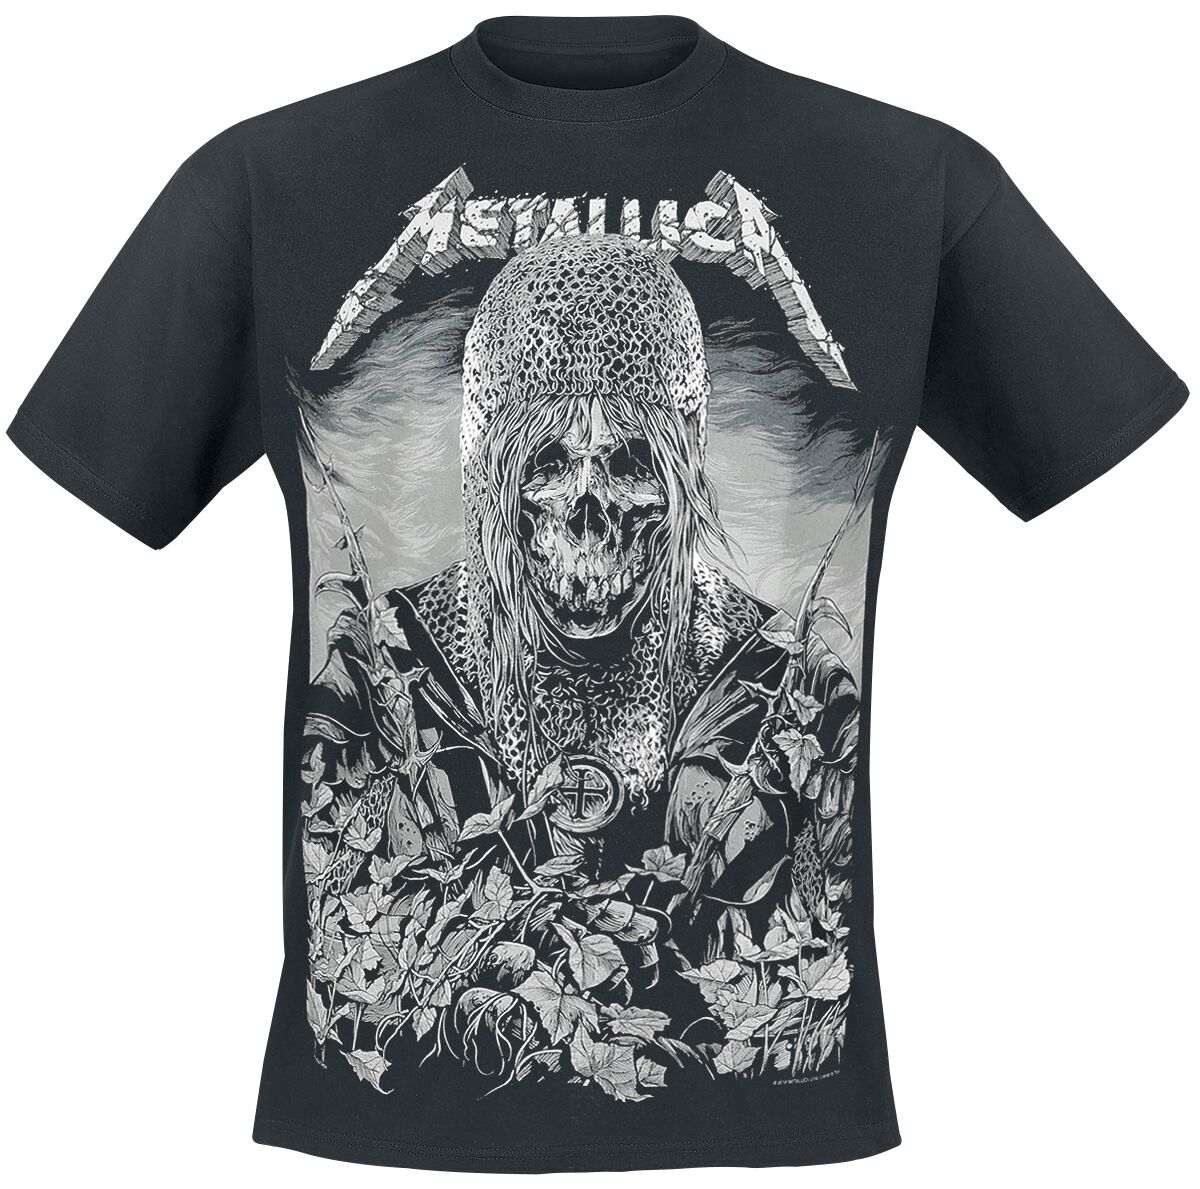 Metallica T-Shirt - Templar - S bis 3XL - für Männer - Größe XXL - schwarz  - Lizenziertes Merchandise!